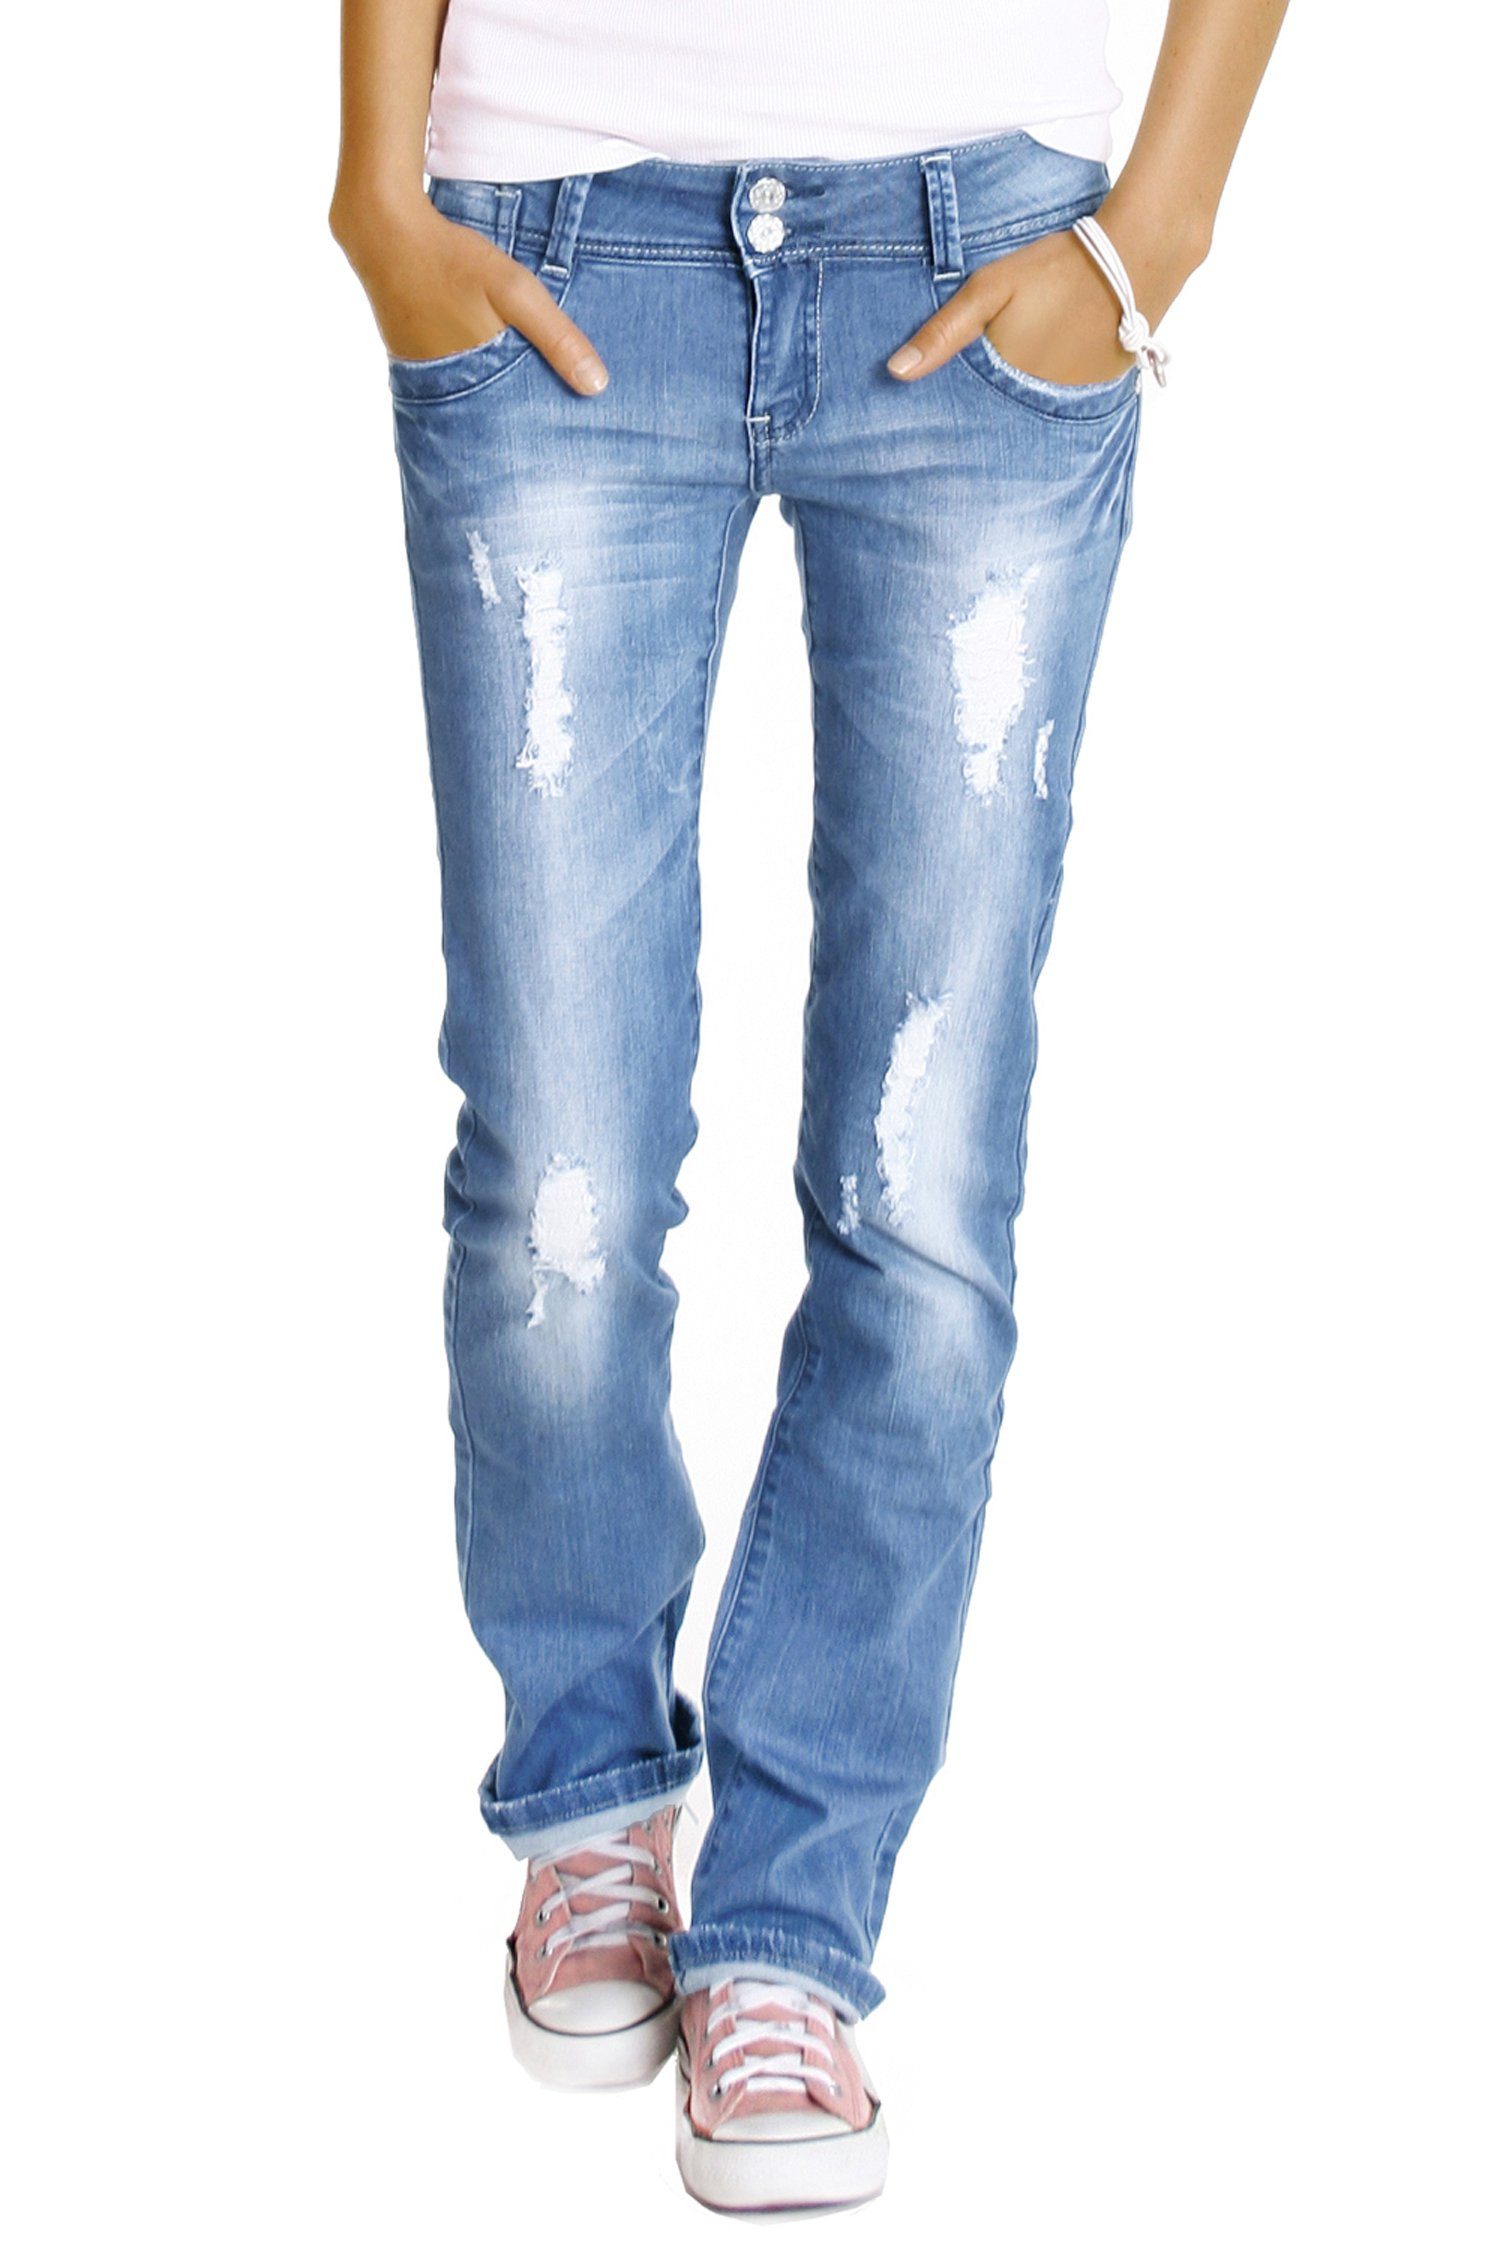 be styled Bootcut-Jeans Hüftjeans destroyed Bootcut Джинсы Hose zerrissen gerades bein - j28x mit Stretch-Anteil, 5-Pocket-Style